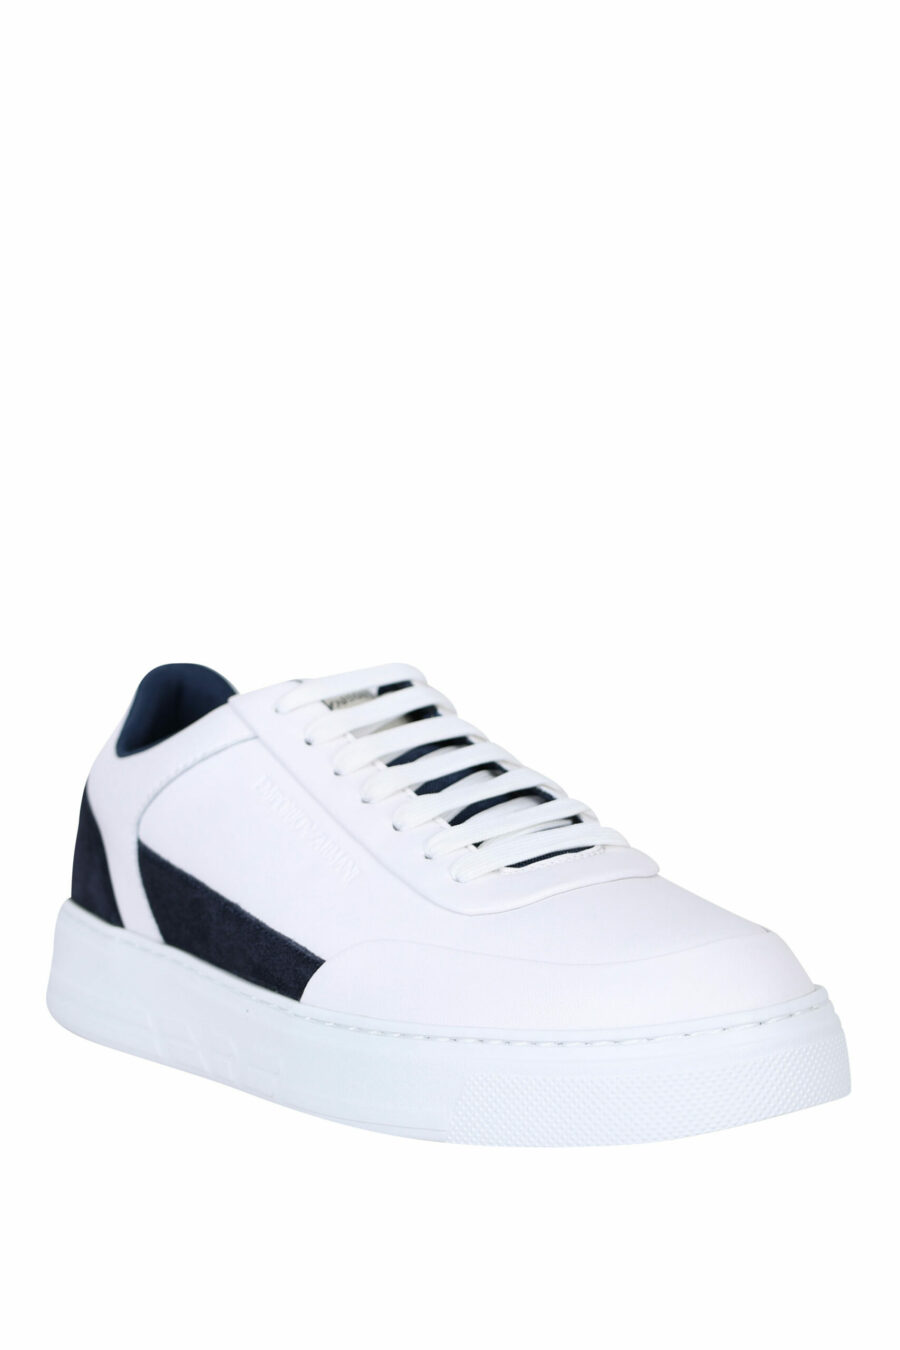 Zapatillas blancas y azules marino con logo - 8057767470623 1 scaled